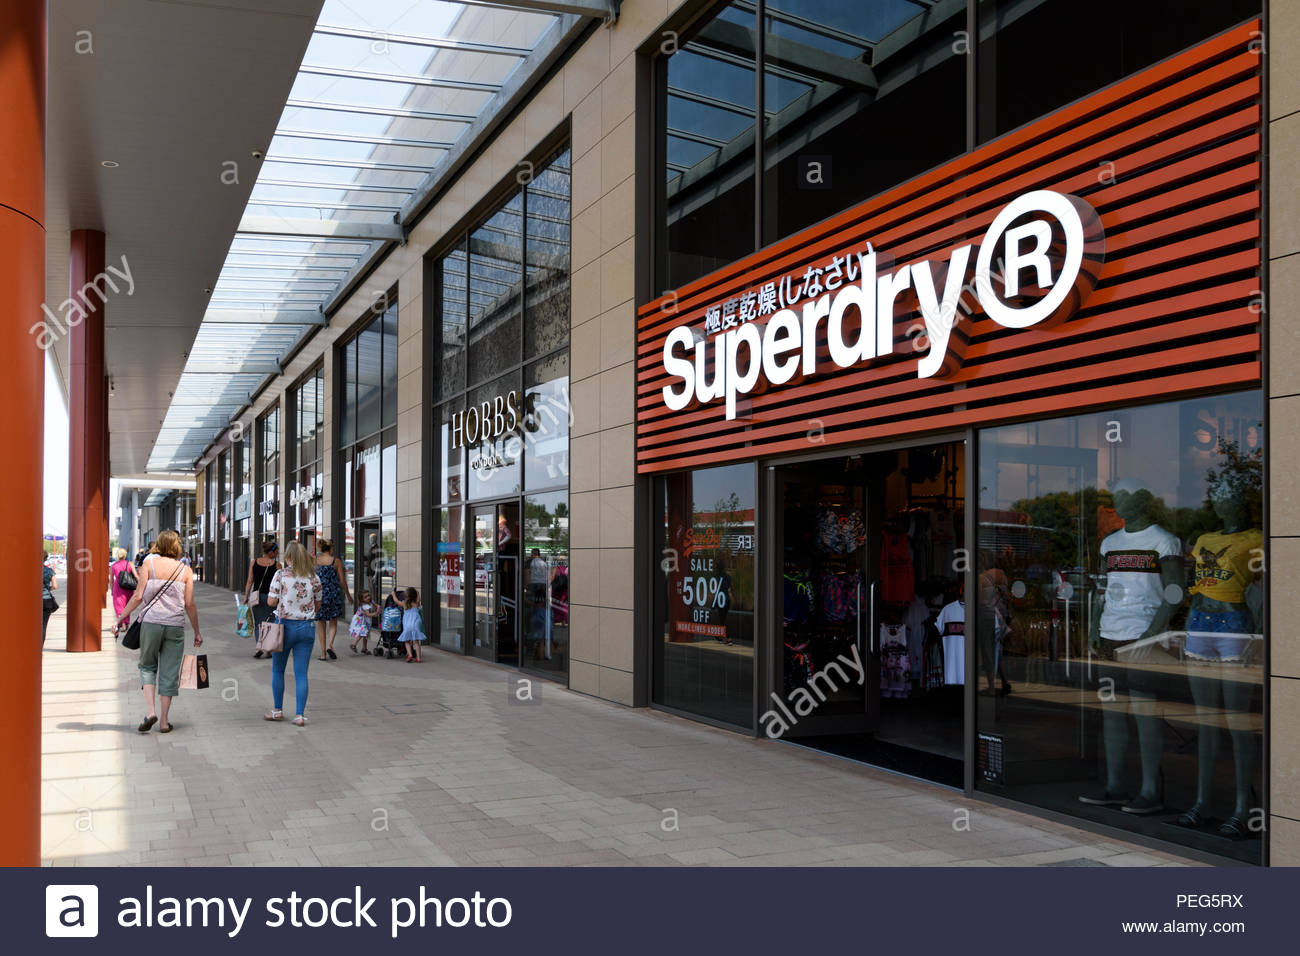 Superdry Sign Banque d'image et photos - Alamy